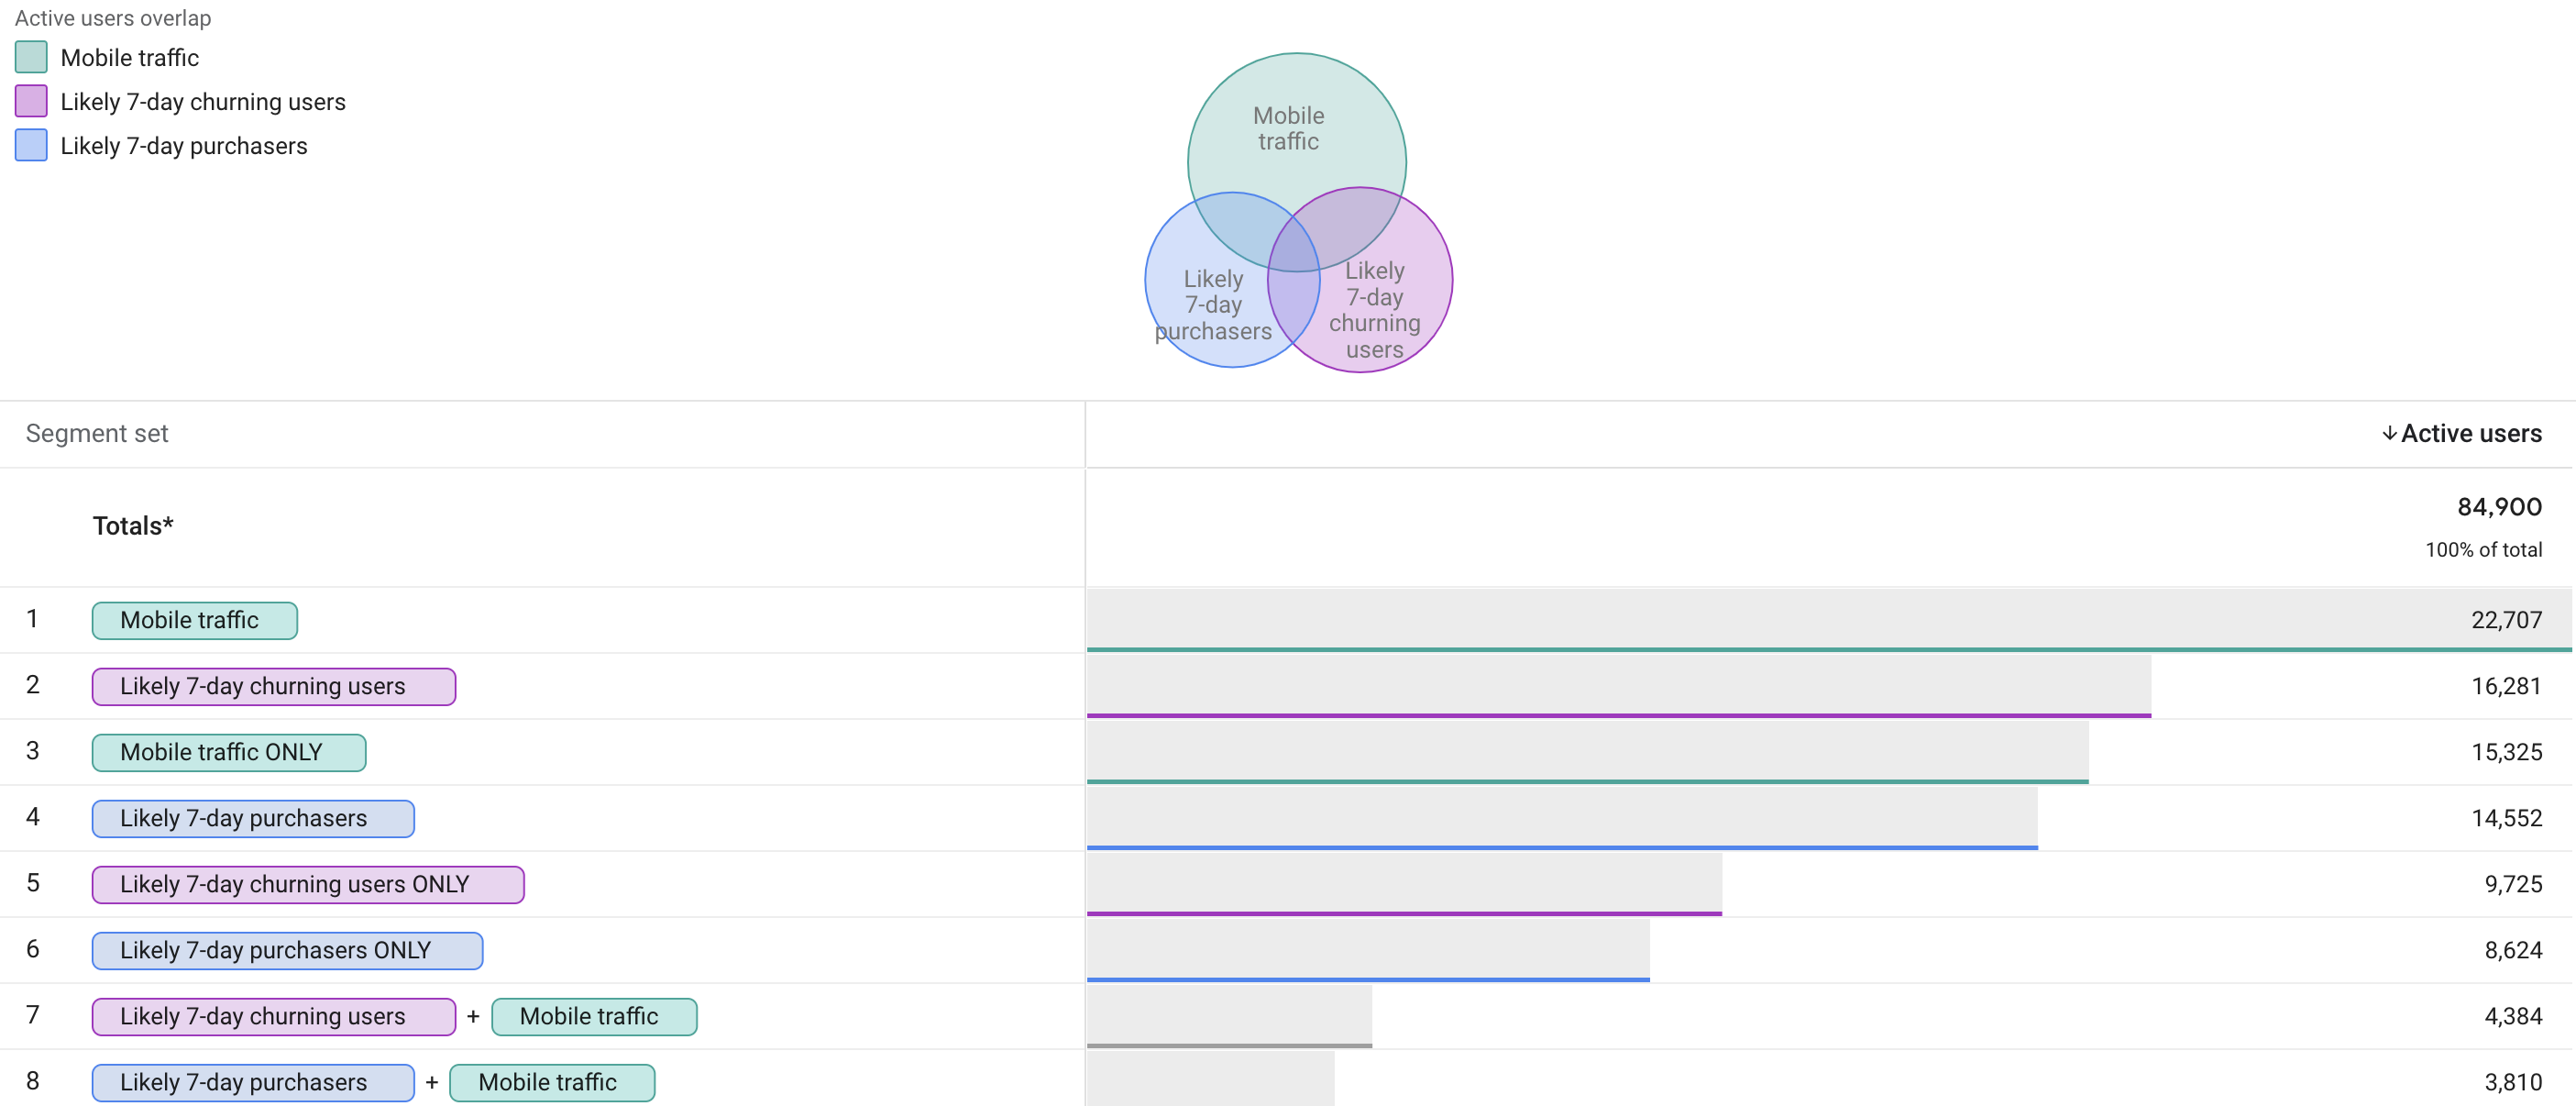 Superposición de segmentos en Google Analytics 4 mediante análisis predictivo.